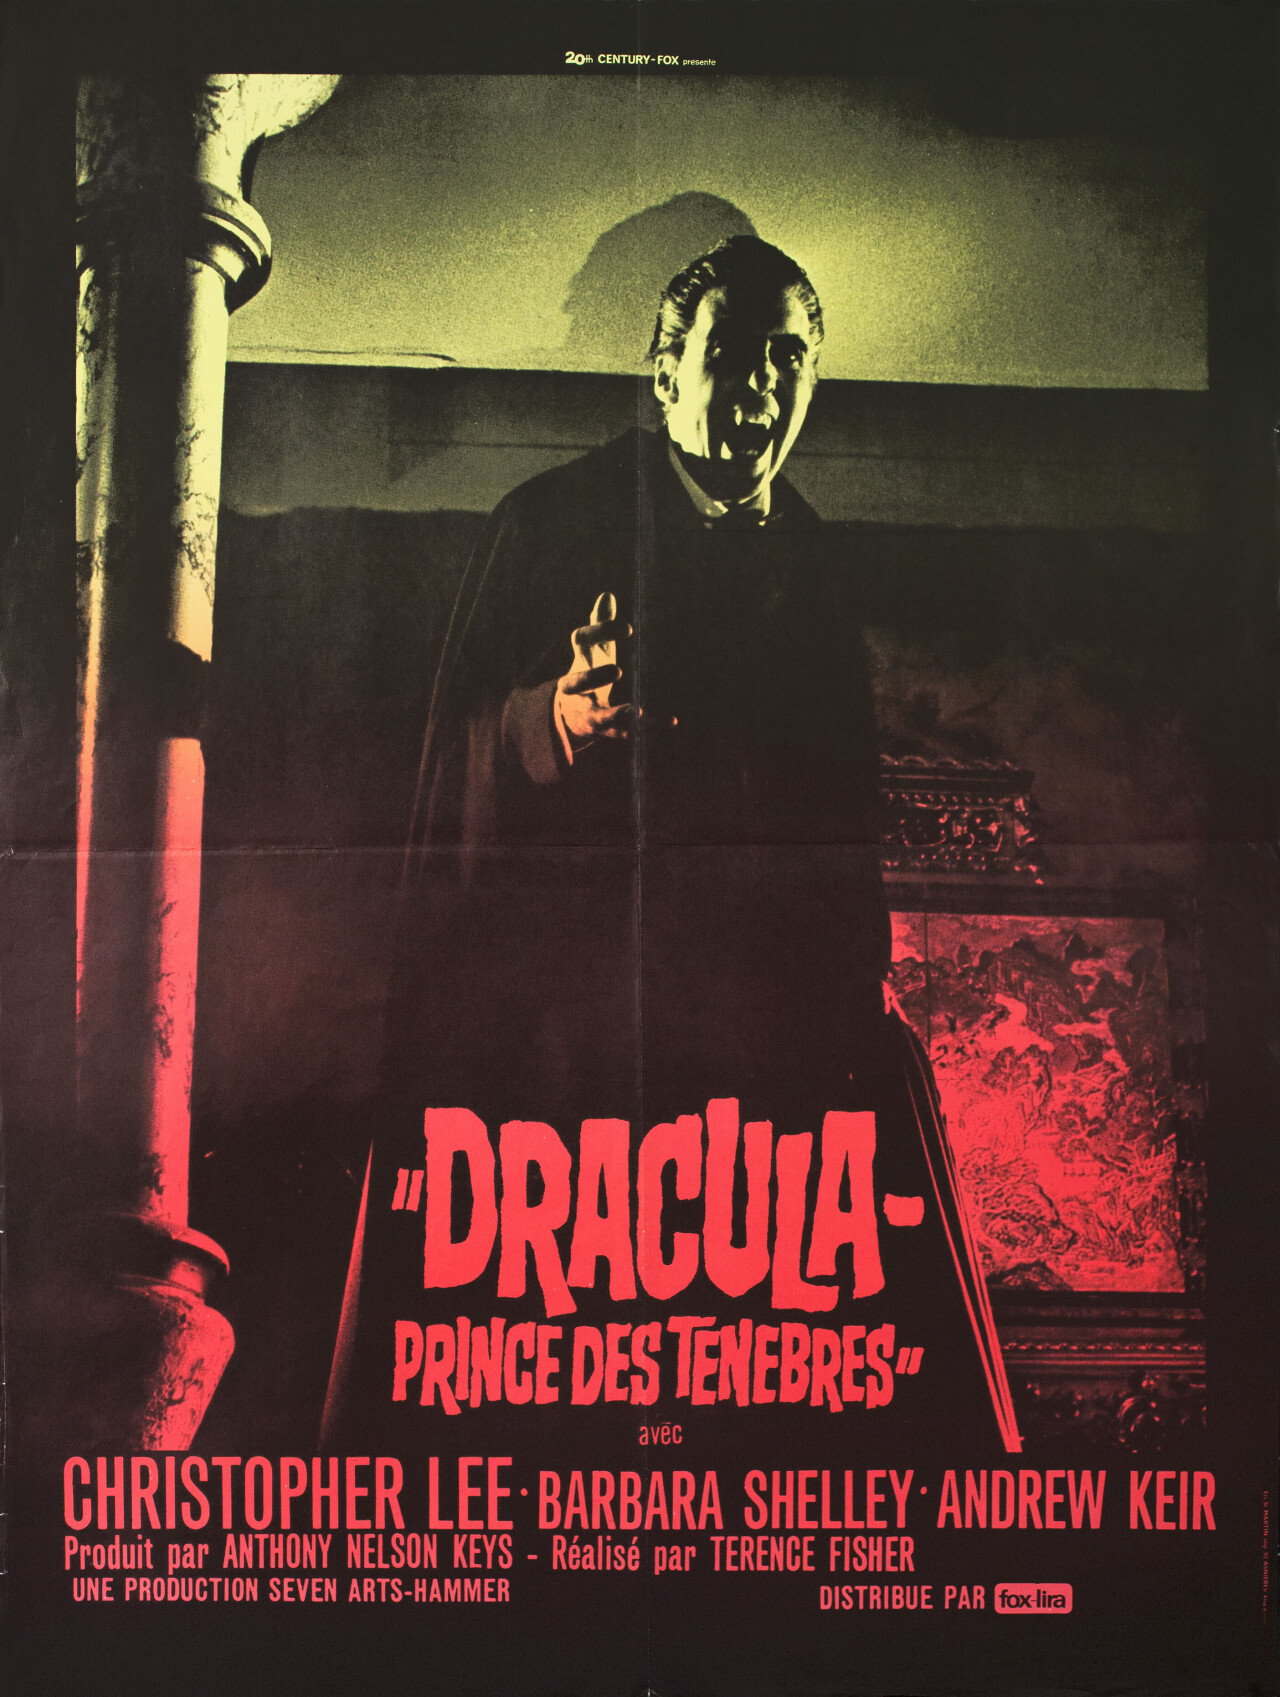 Дракула: Князь Тьмы (Dracula Prince of Darkness, 1966), режиссёр Теренс Фишер, французский постер к фильму (Hummer horror, 1966 год)